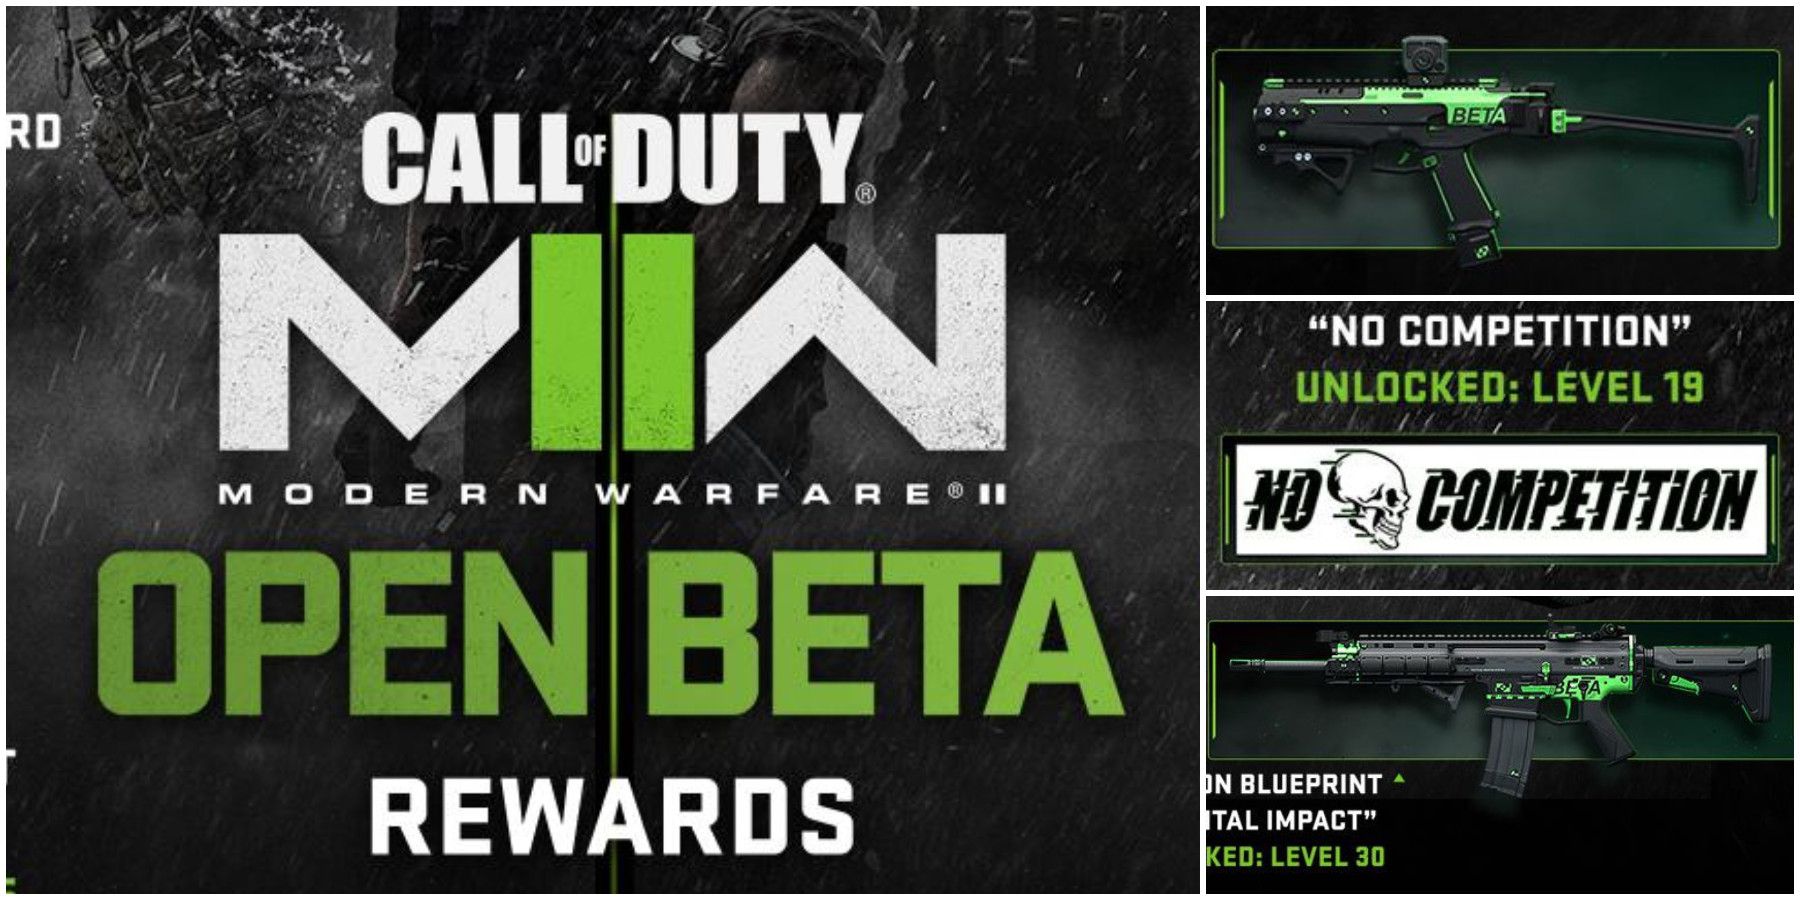 Call of Duty Modern Warfare 2 Beta Rewards